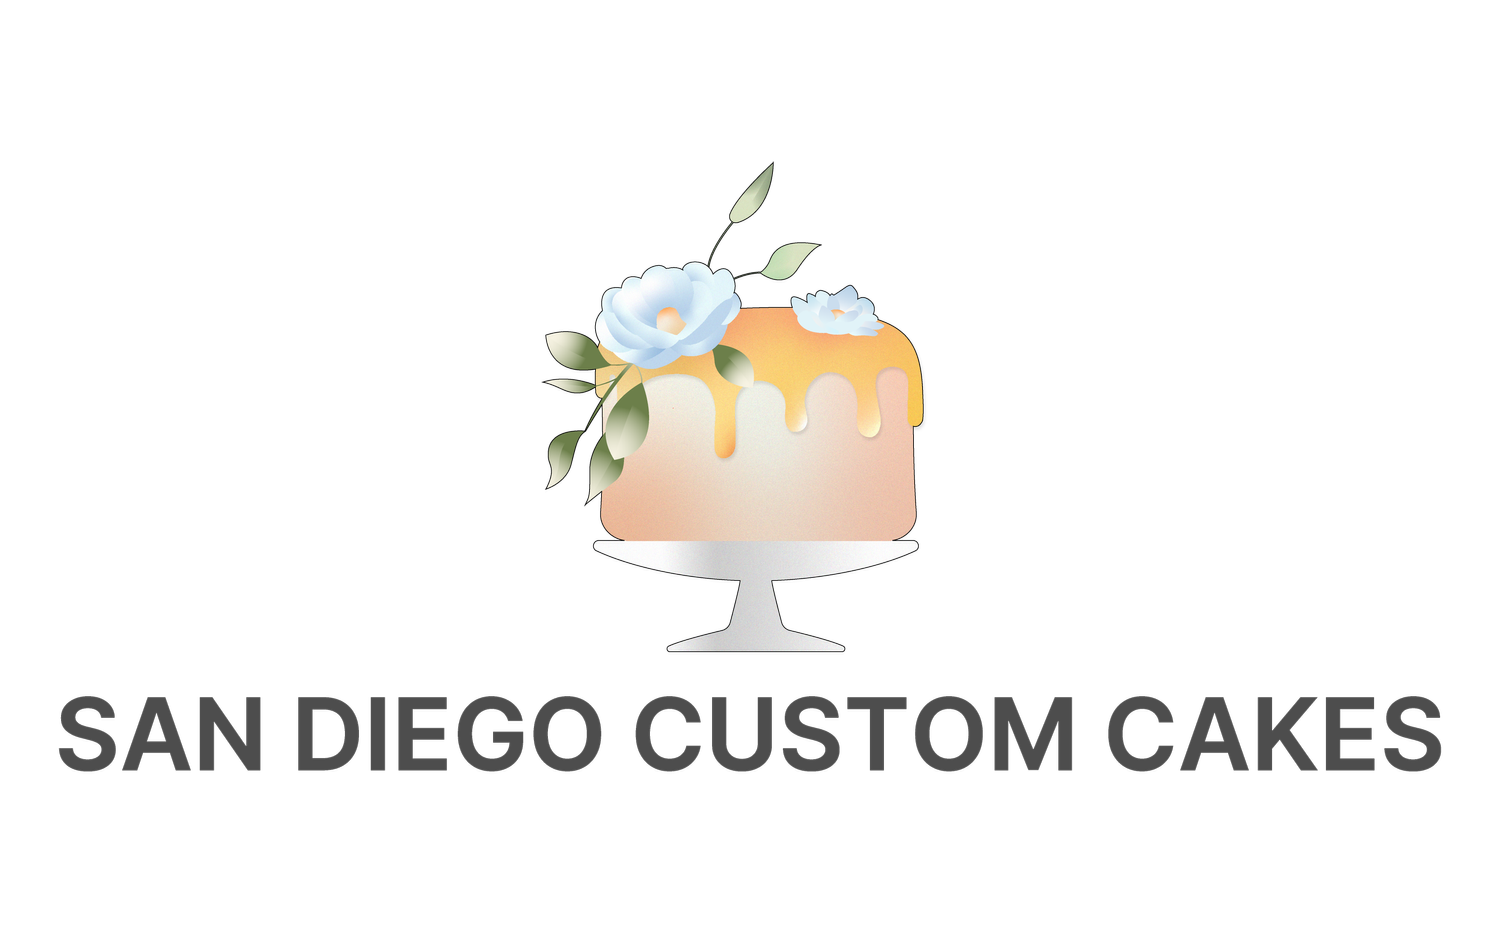 San Diego Custom Cakes